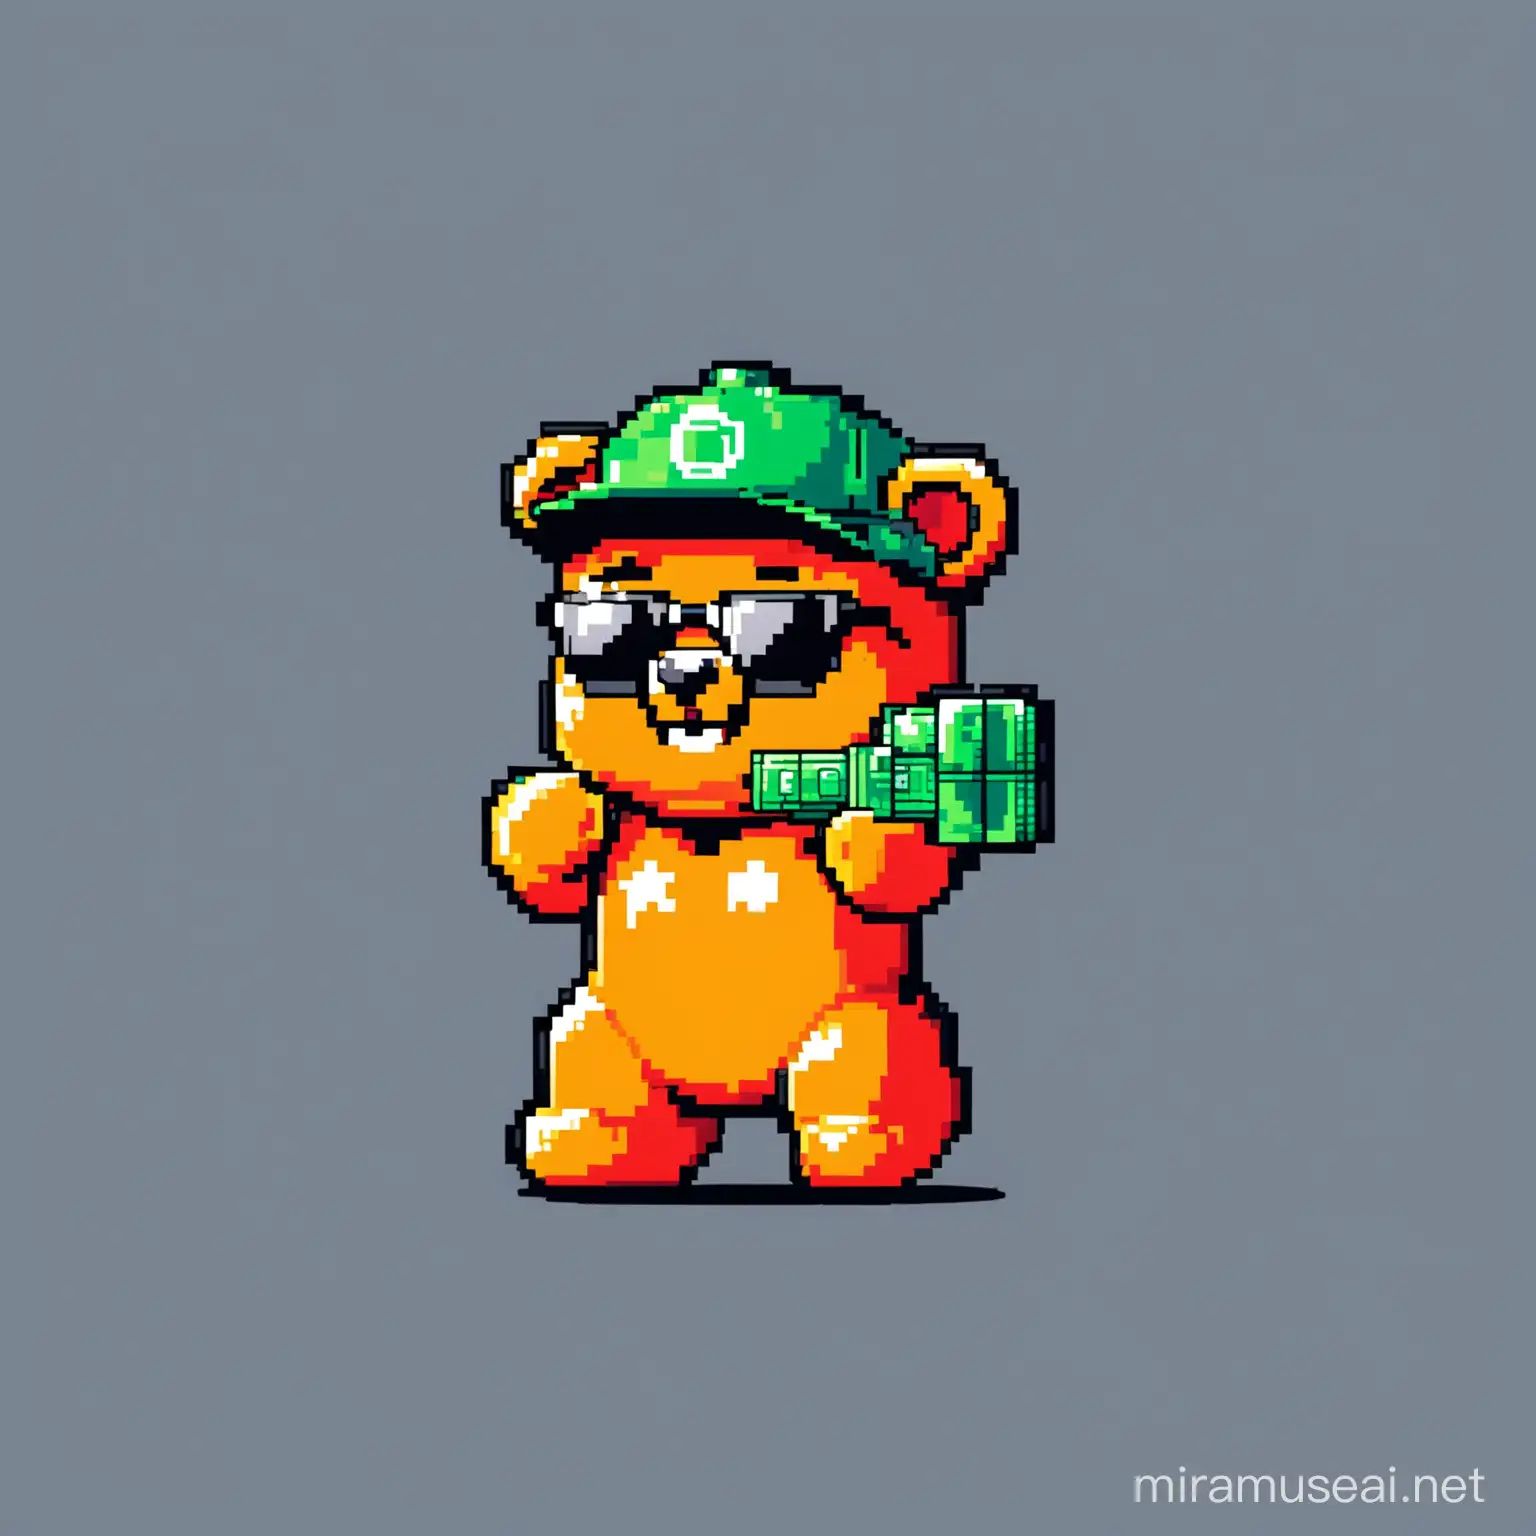 Colorful 8 Bit Gummy Bear Mascot for Crypto Meme Token